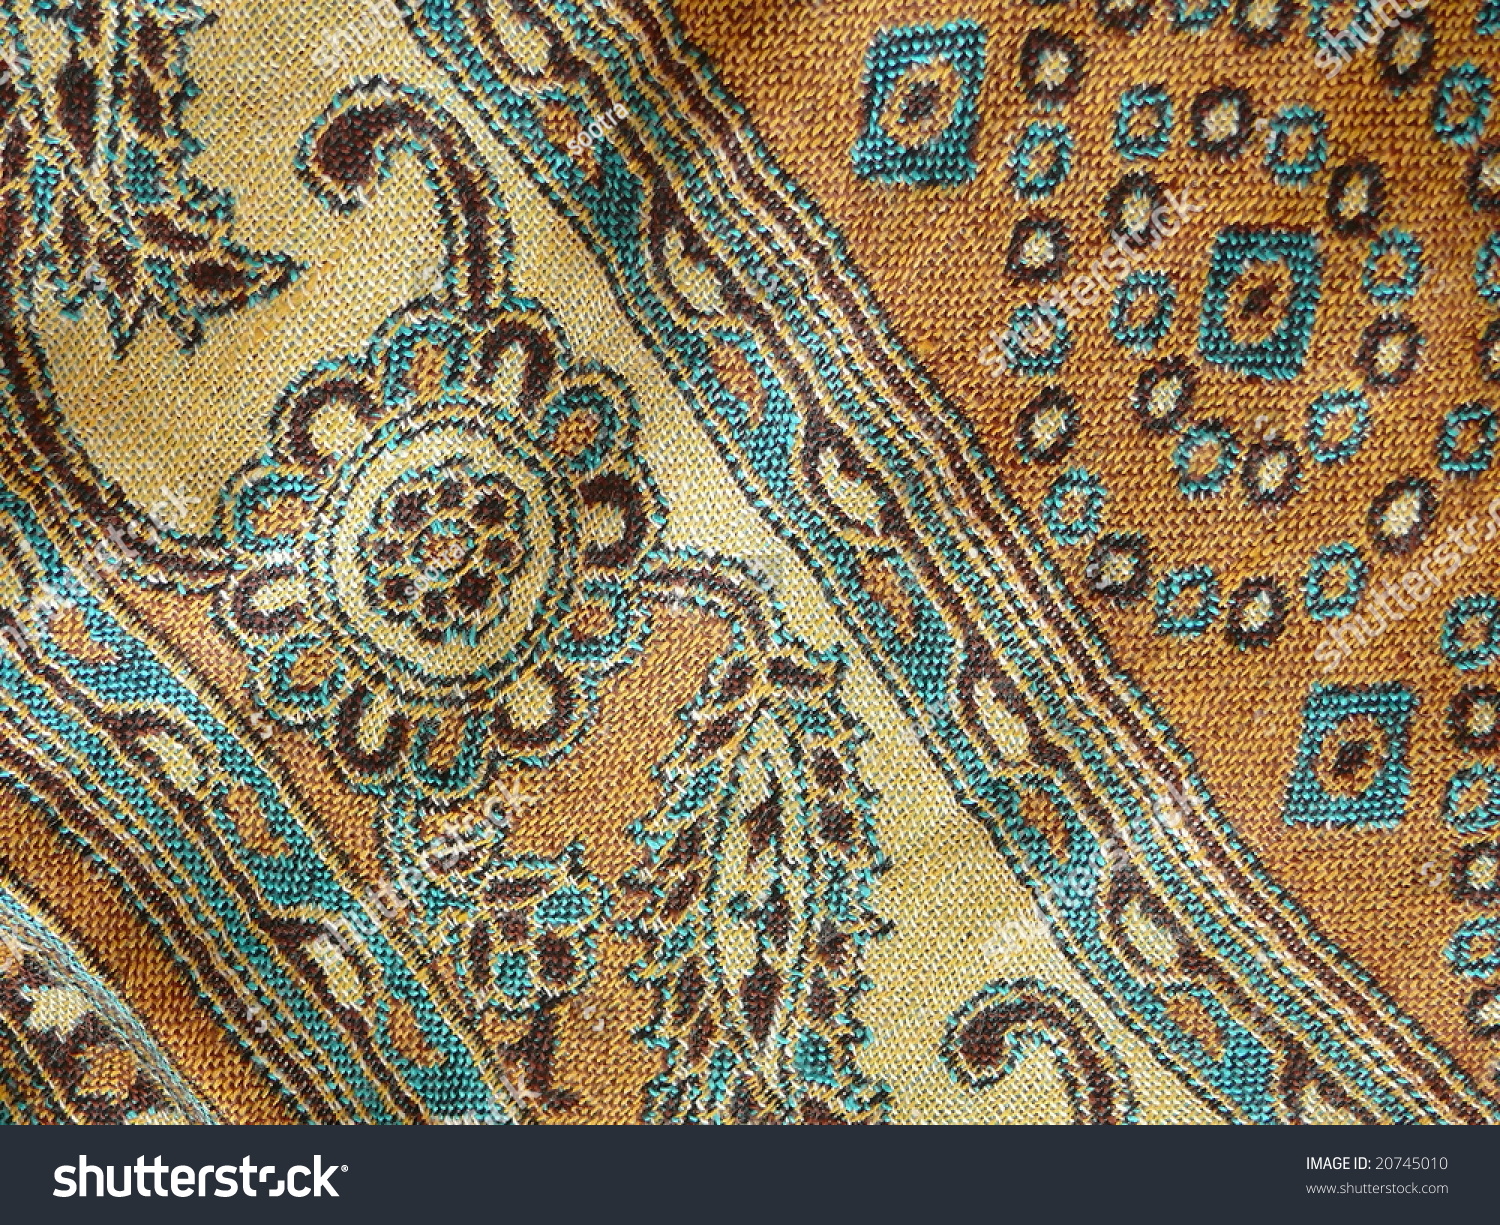 Beautiful Arab Arabic Arabian Arabesque Fabric Stock Photo 20745010 ...